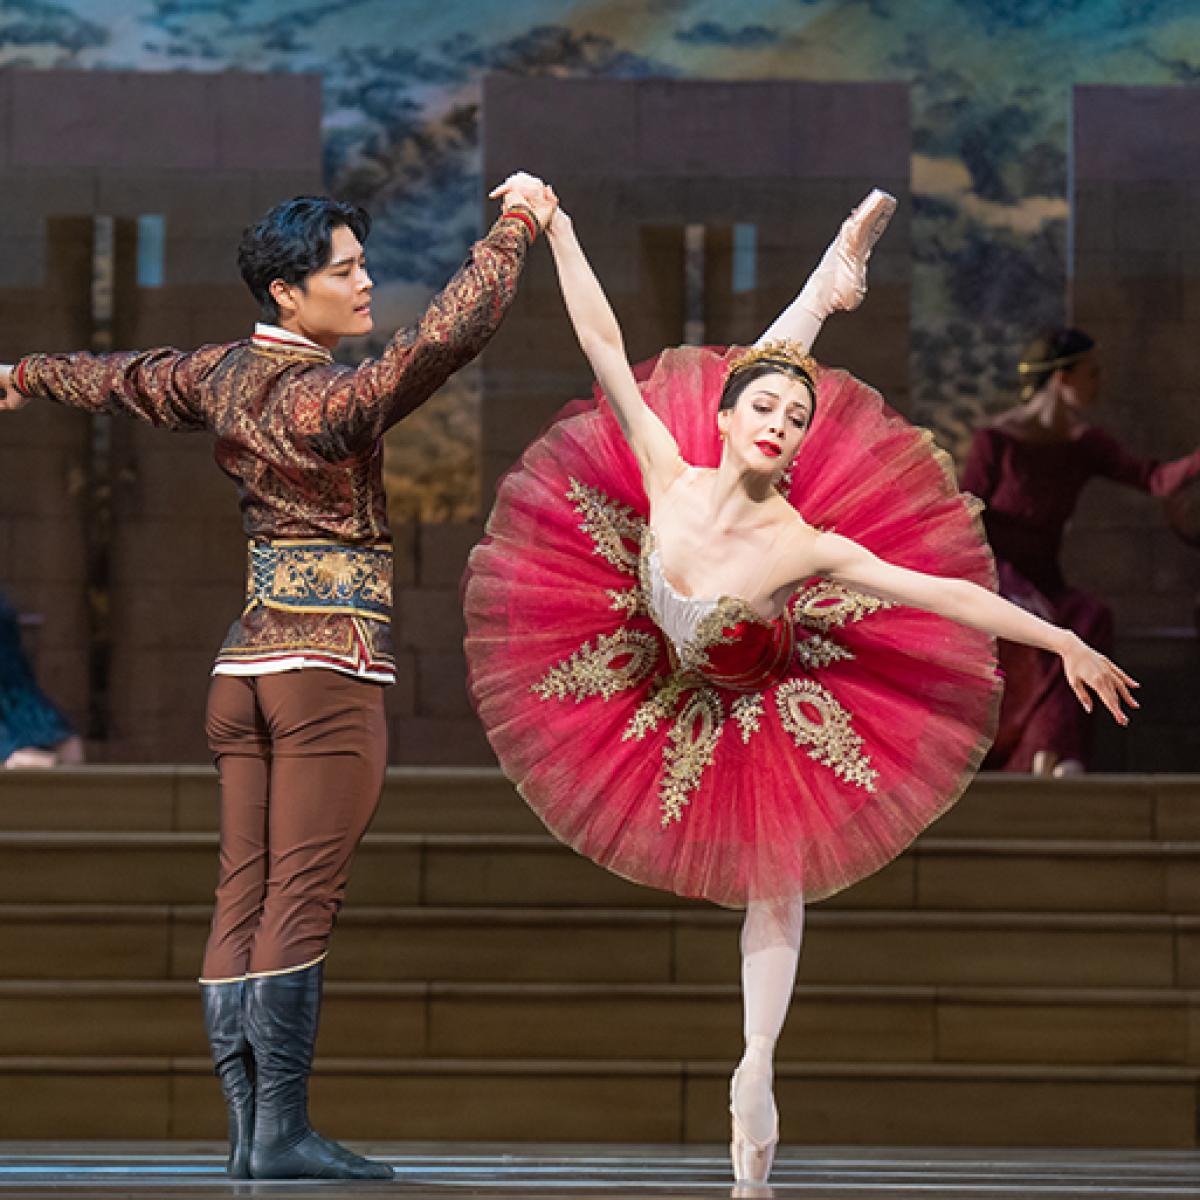 cascade Betrokken gekruld De tutu: Hoe een tule rok uitgroeide tot balletfenomeen | Nationale Opera &  Ballet